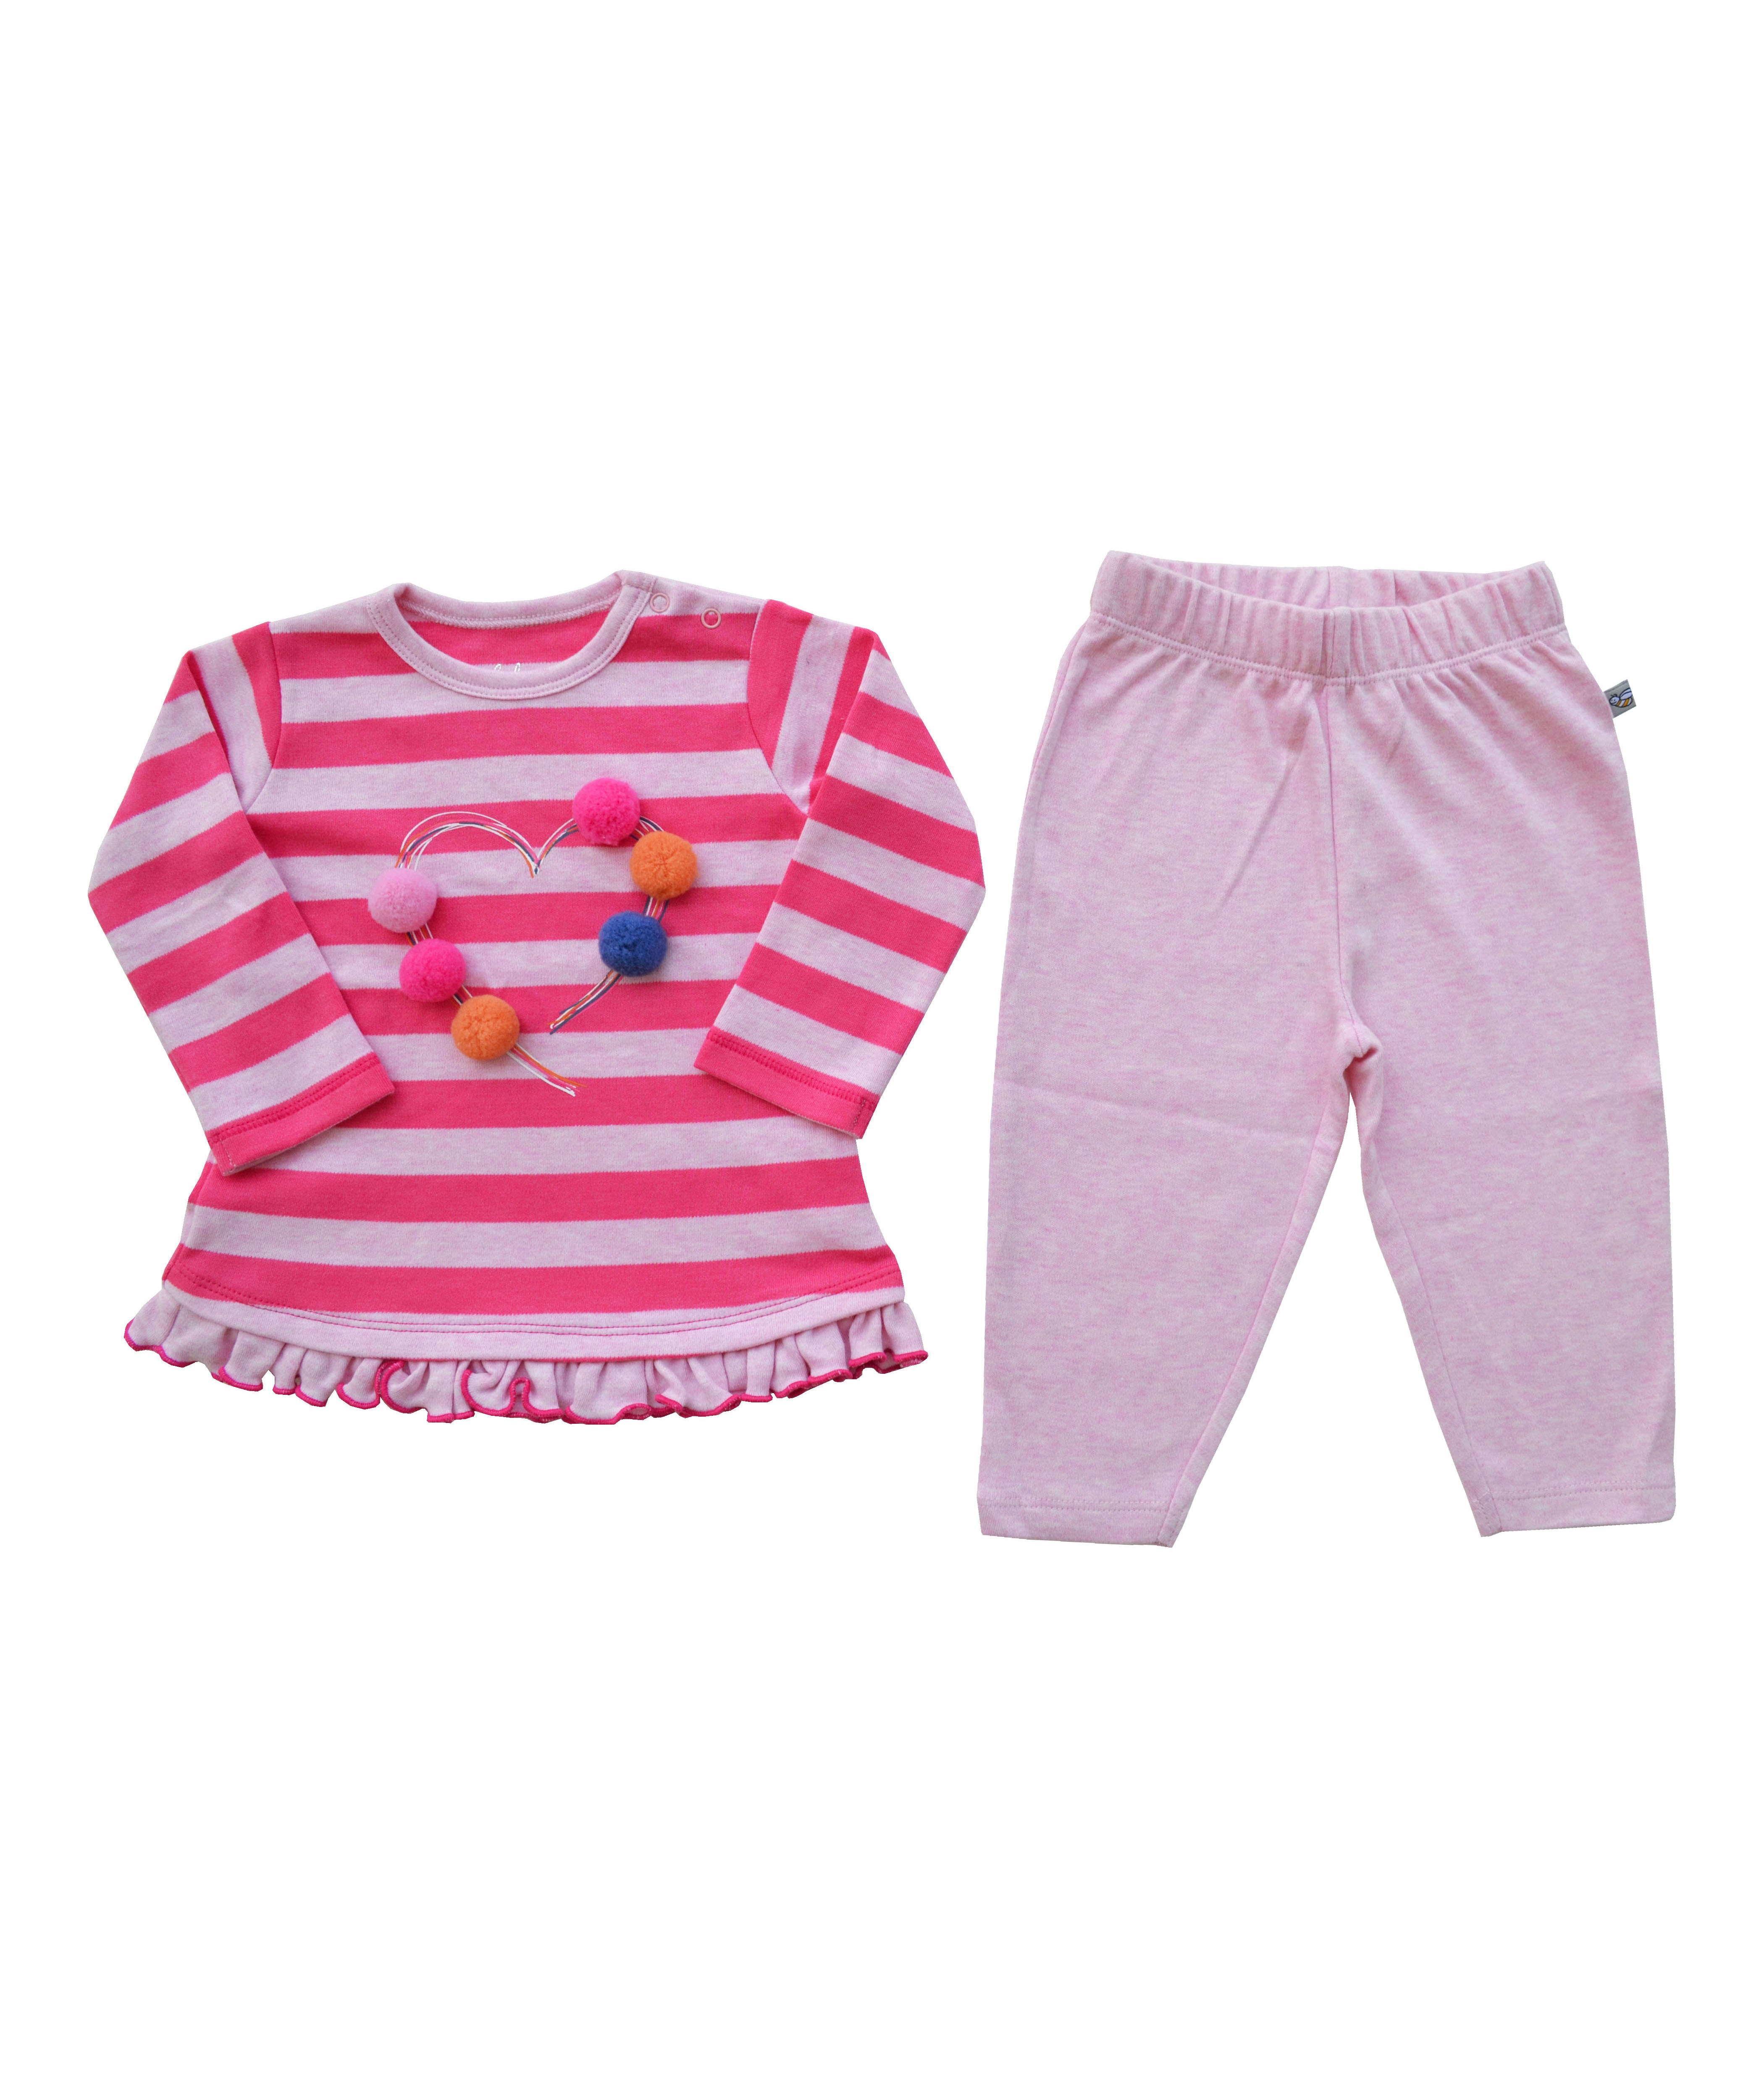 Babeez | Pink Striped Full Sleeves Top + Lt. Pink Legging Set (100% Cotton Interlock Biowash) undefined